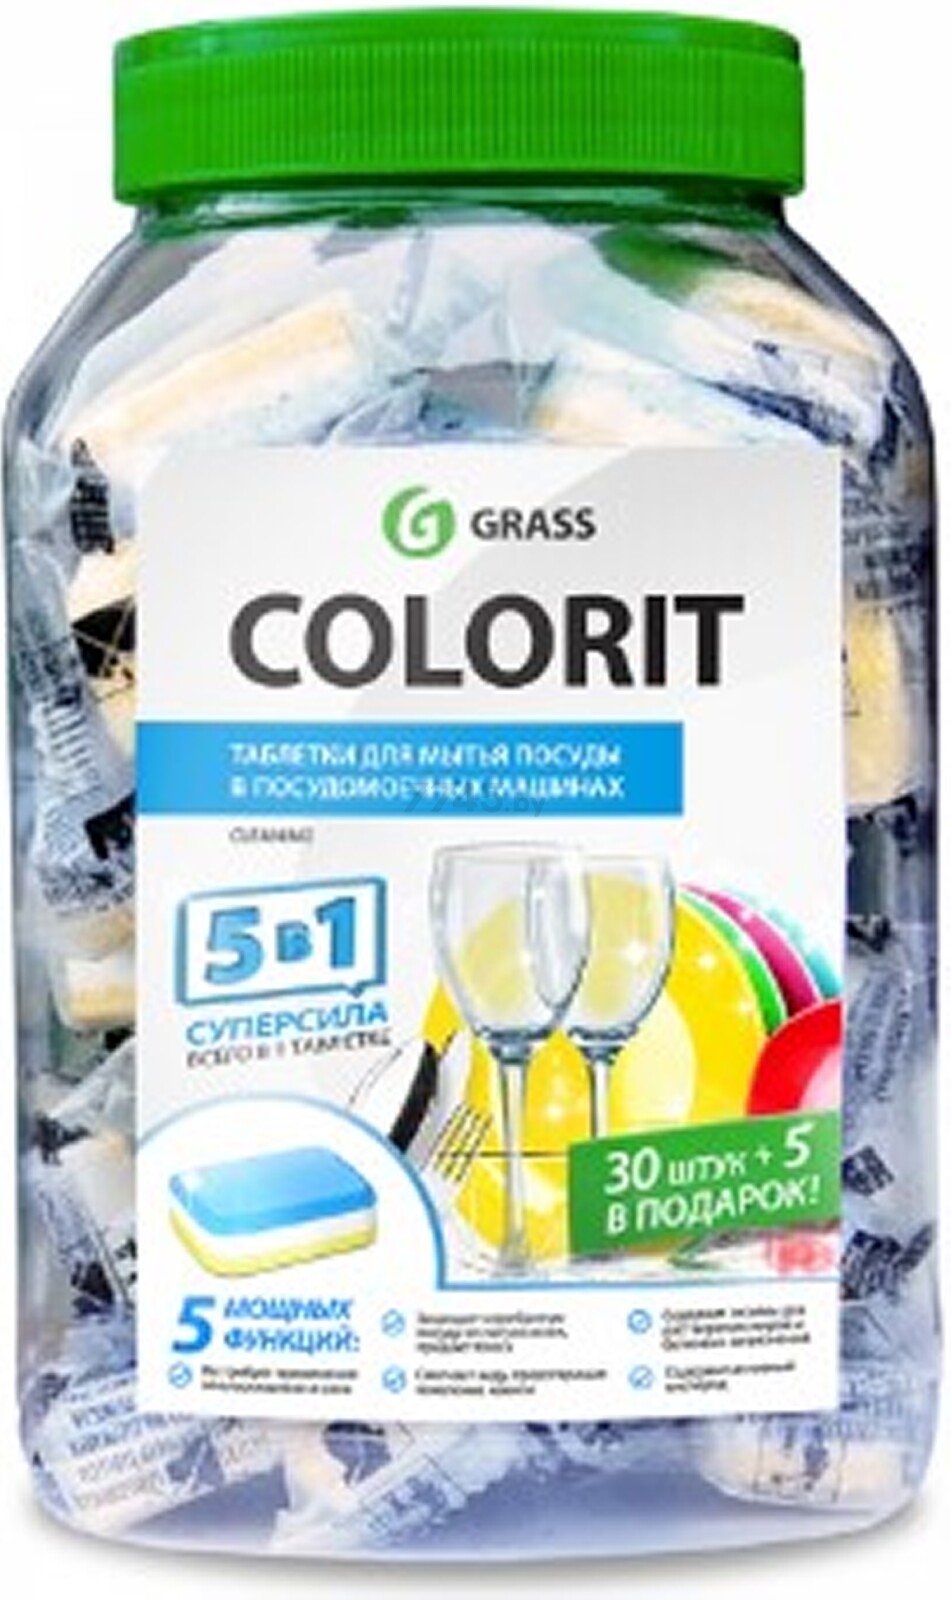 Таблетки для посудомоечных машин GRASS Colorit 5 в 1 35 штук (213000)